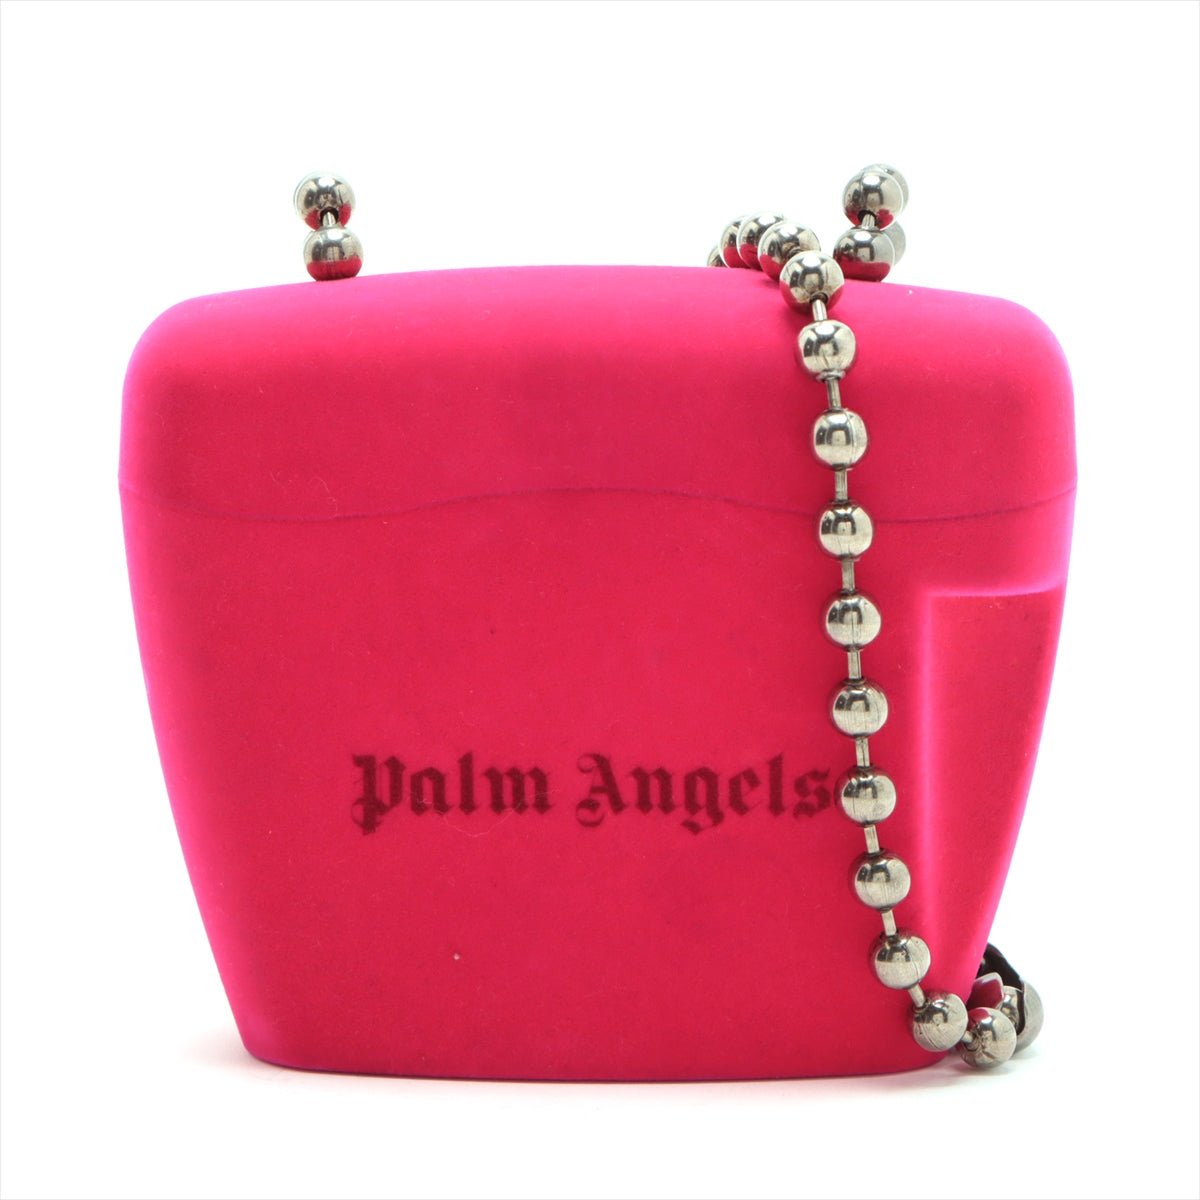 Palm Angels Shoulder Bag Pink